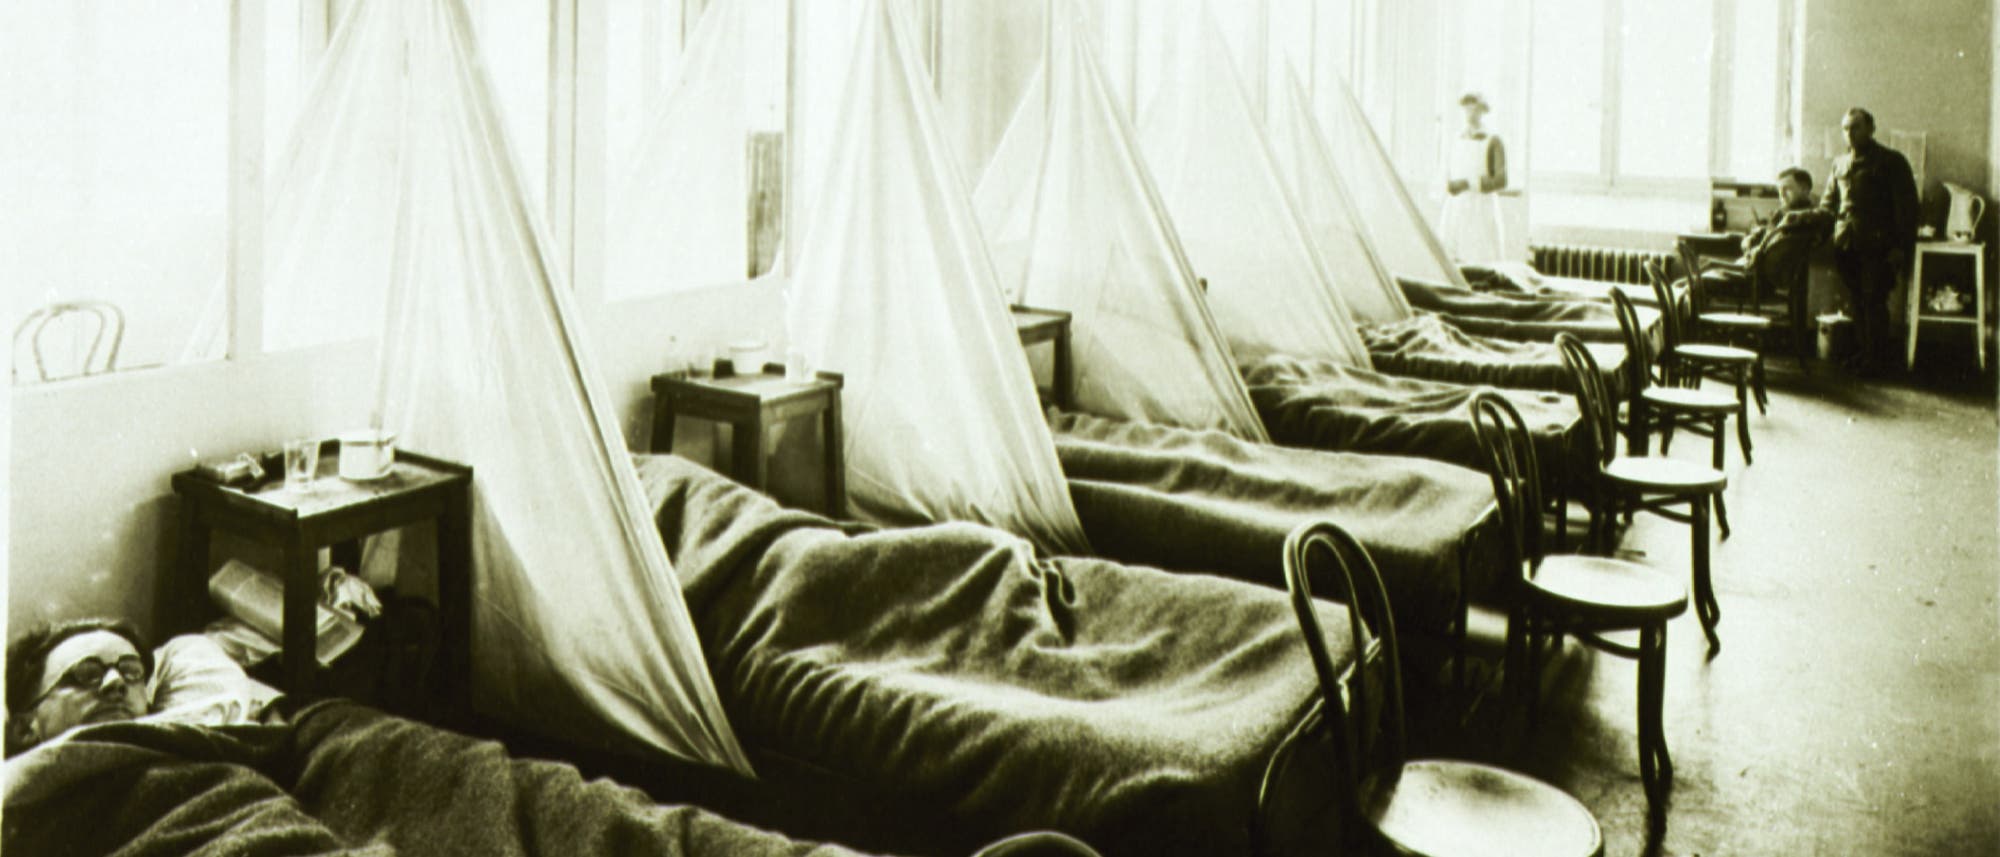 Grippestation im Feldkrankenhaus Aix-les-Bains der US Army in Frankreich während des 1. Weltkrieges